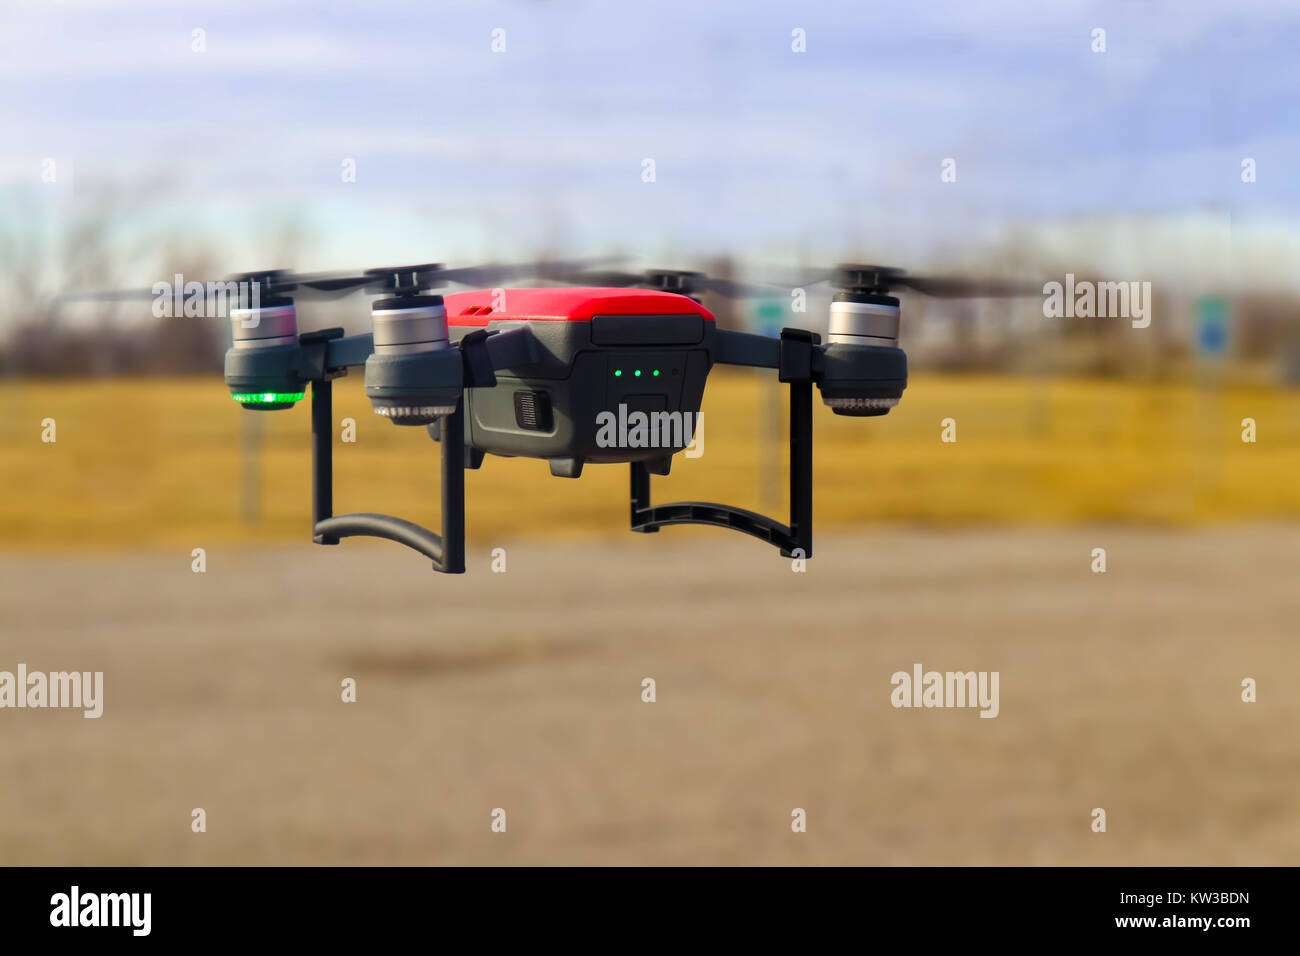 Piccolo rosso e grigio drone in volo con tre quarti della carica della batteria contro sfondo sfocato - inverno Foto Stock